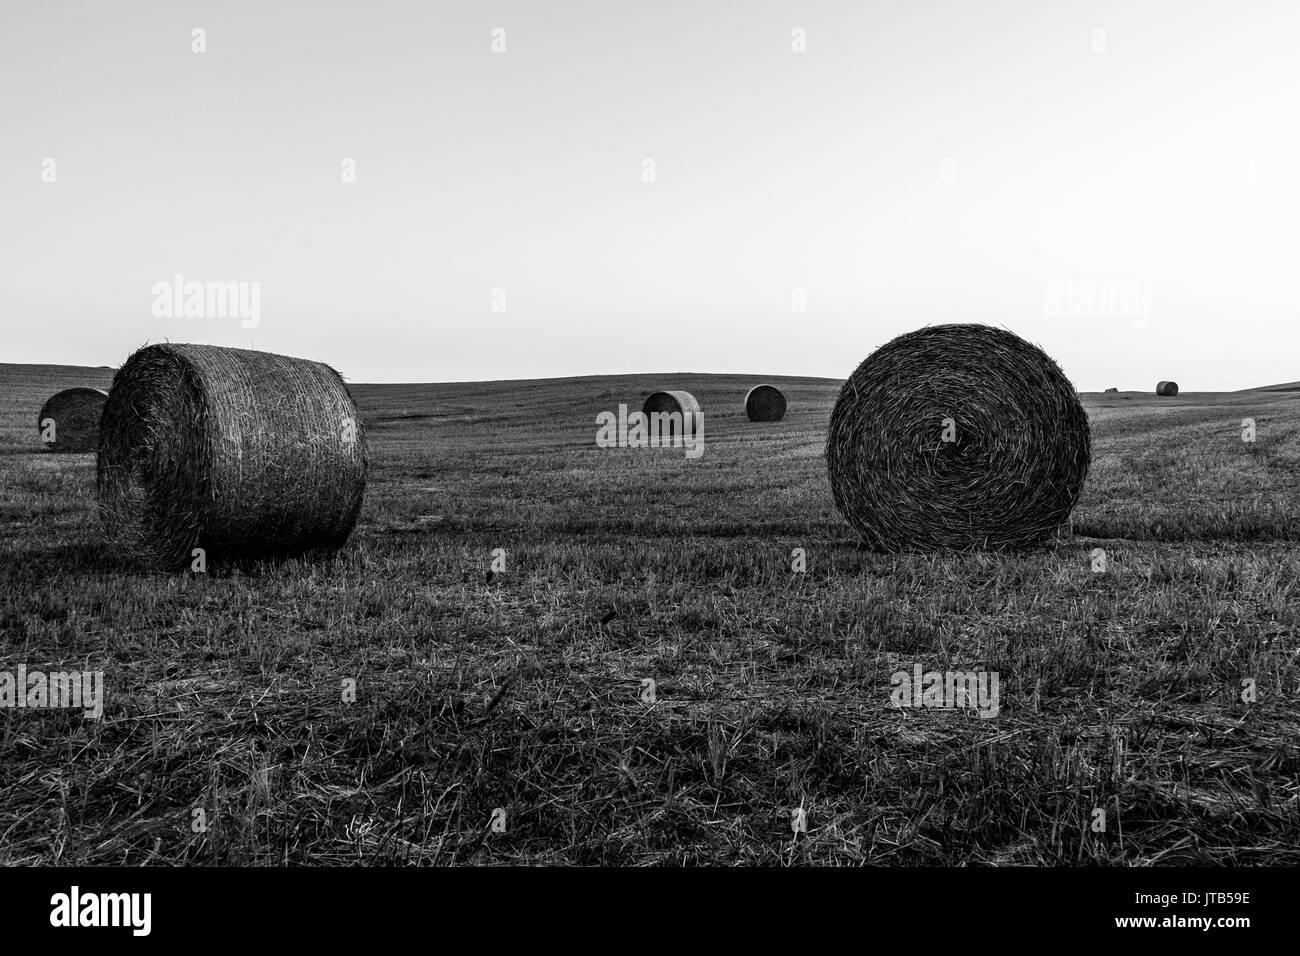 Ein Hügel mit haybales sowohl in den Vordergrund und den Hintergrund, die unter einem leeren, hellen Himmel Stockfoto